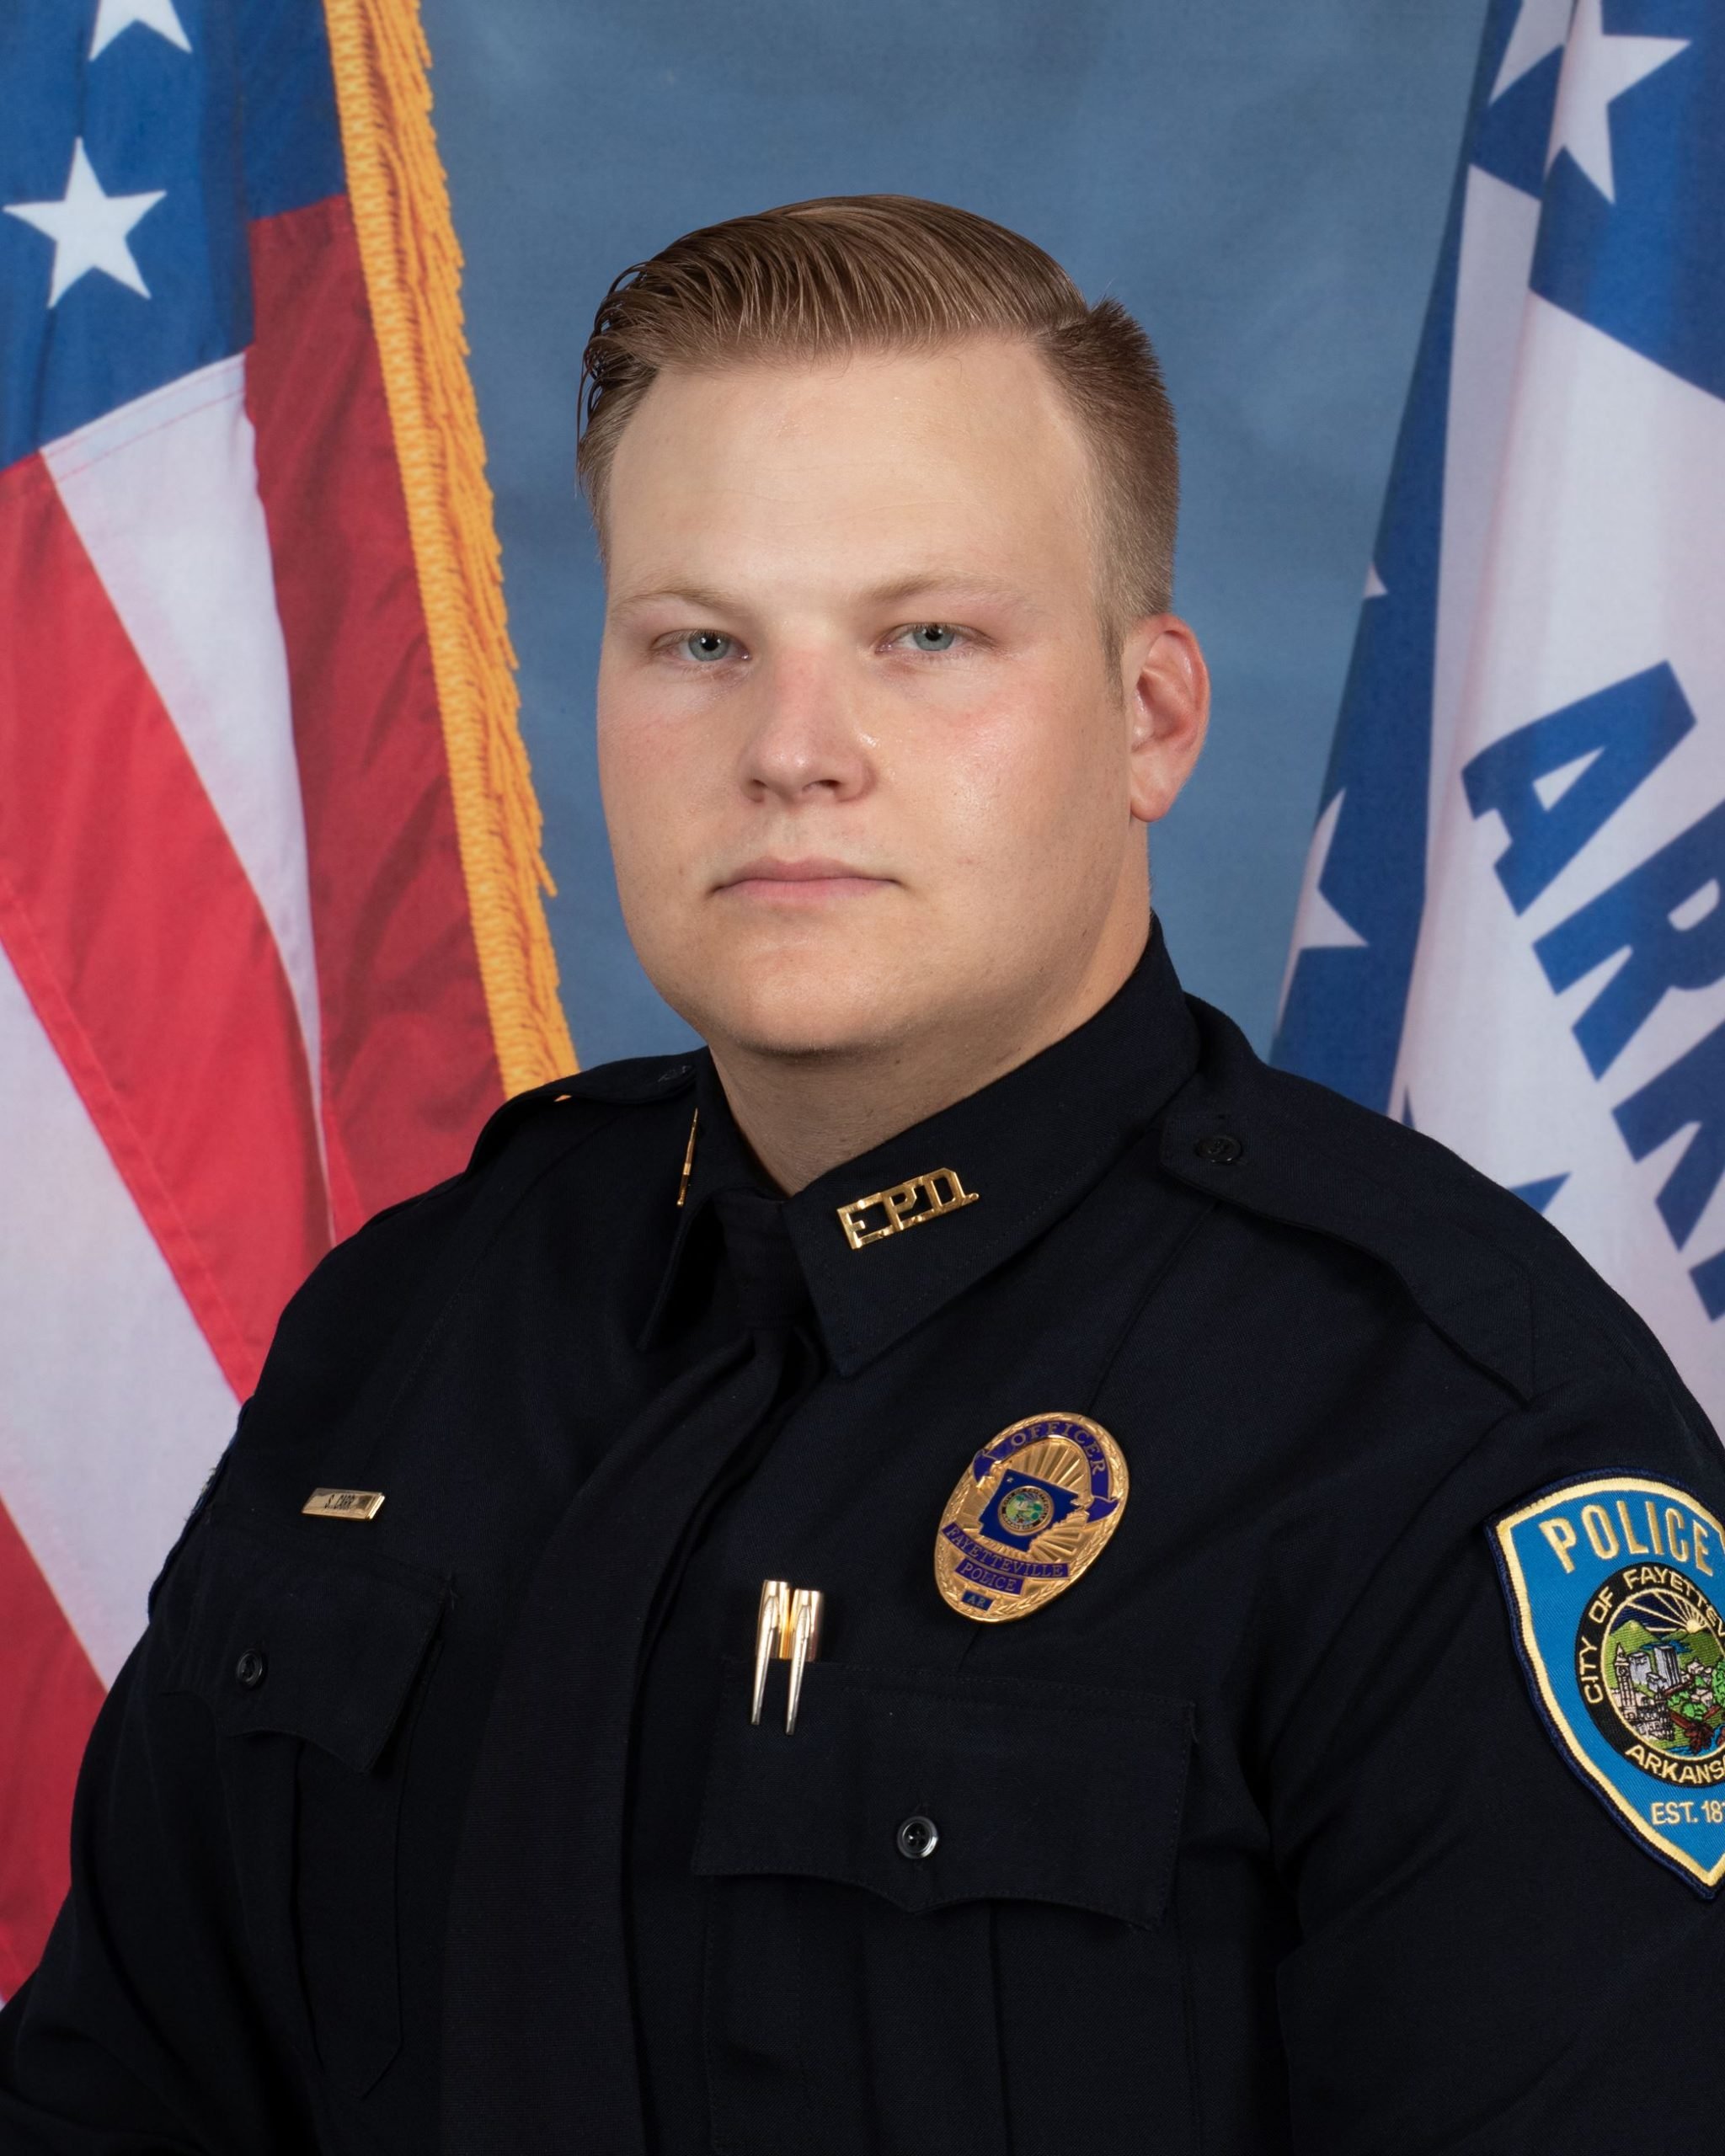 Police Officer Stephen Carr, Fayetteville Police Department, Arkansas